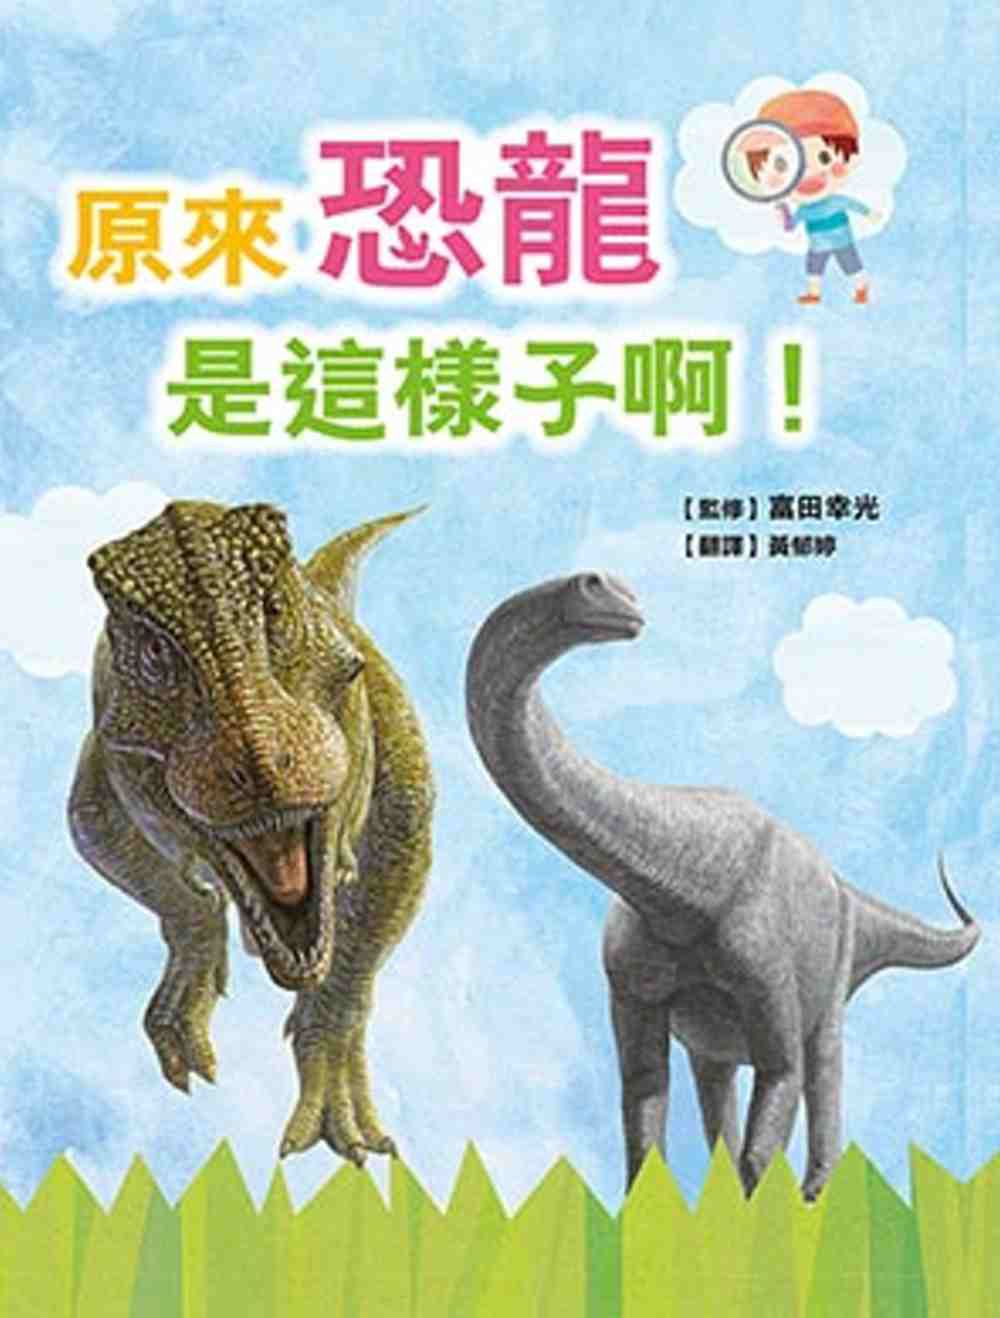 原來恐龍是這樣子啊！